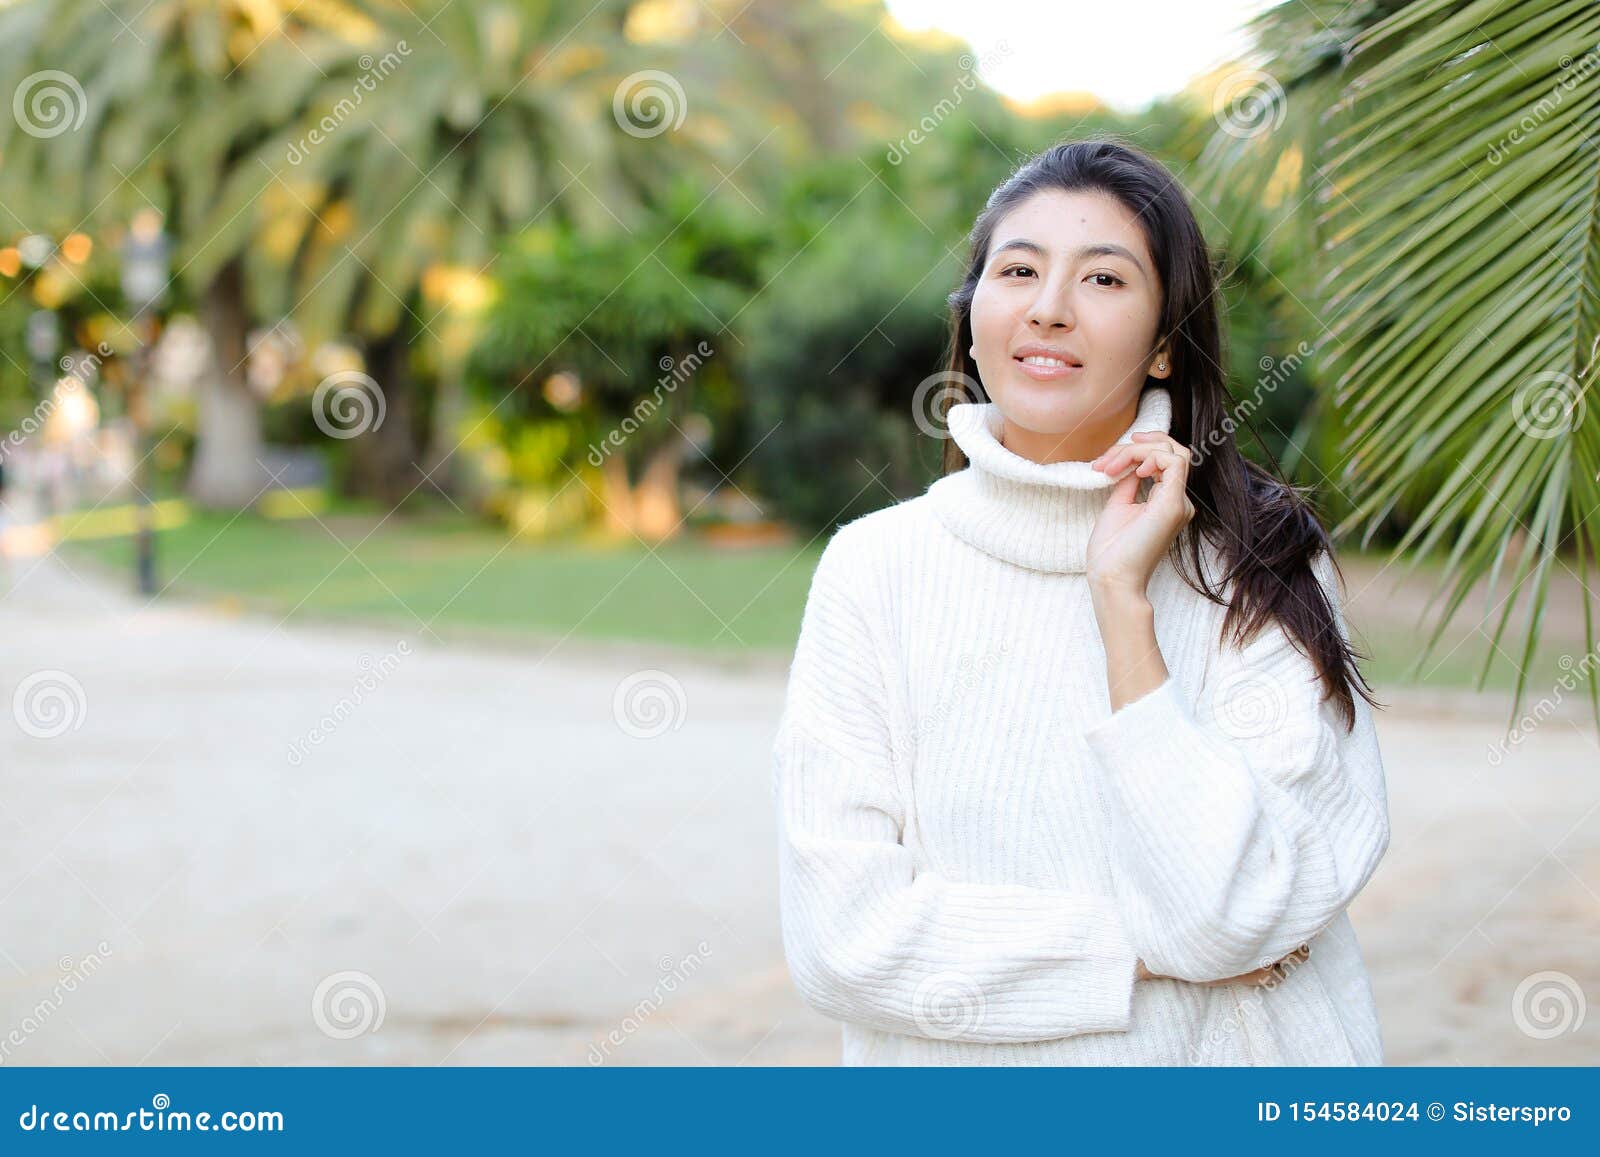 棕叶旁穿白色毛衣的韩国女孩库存照片. 图片包括有女孩, 高雅, 纵向  image